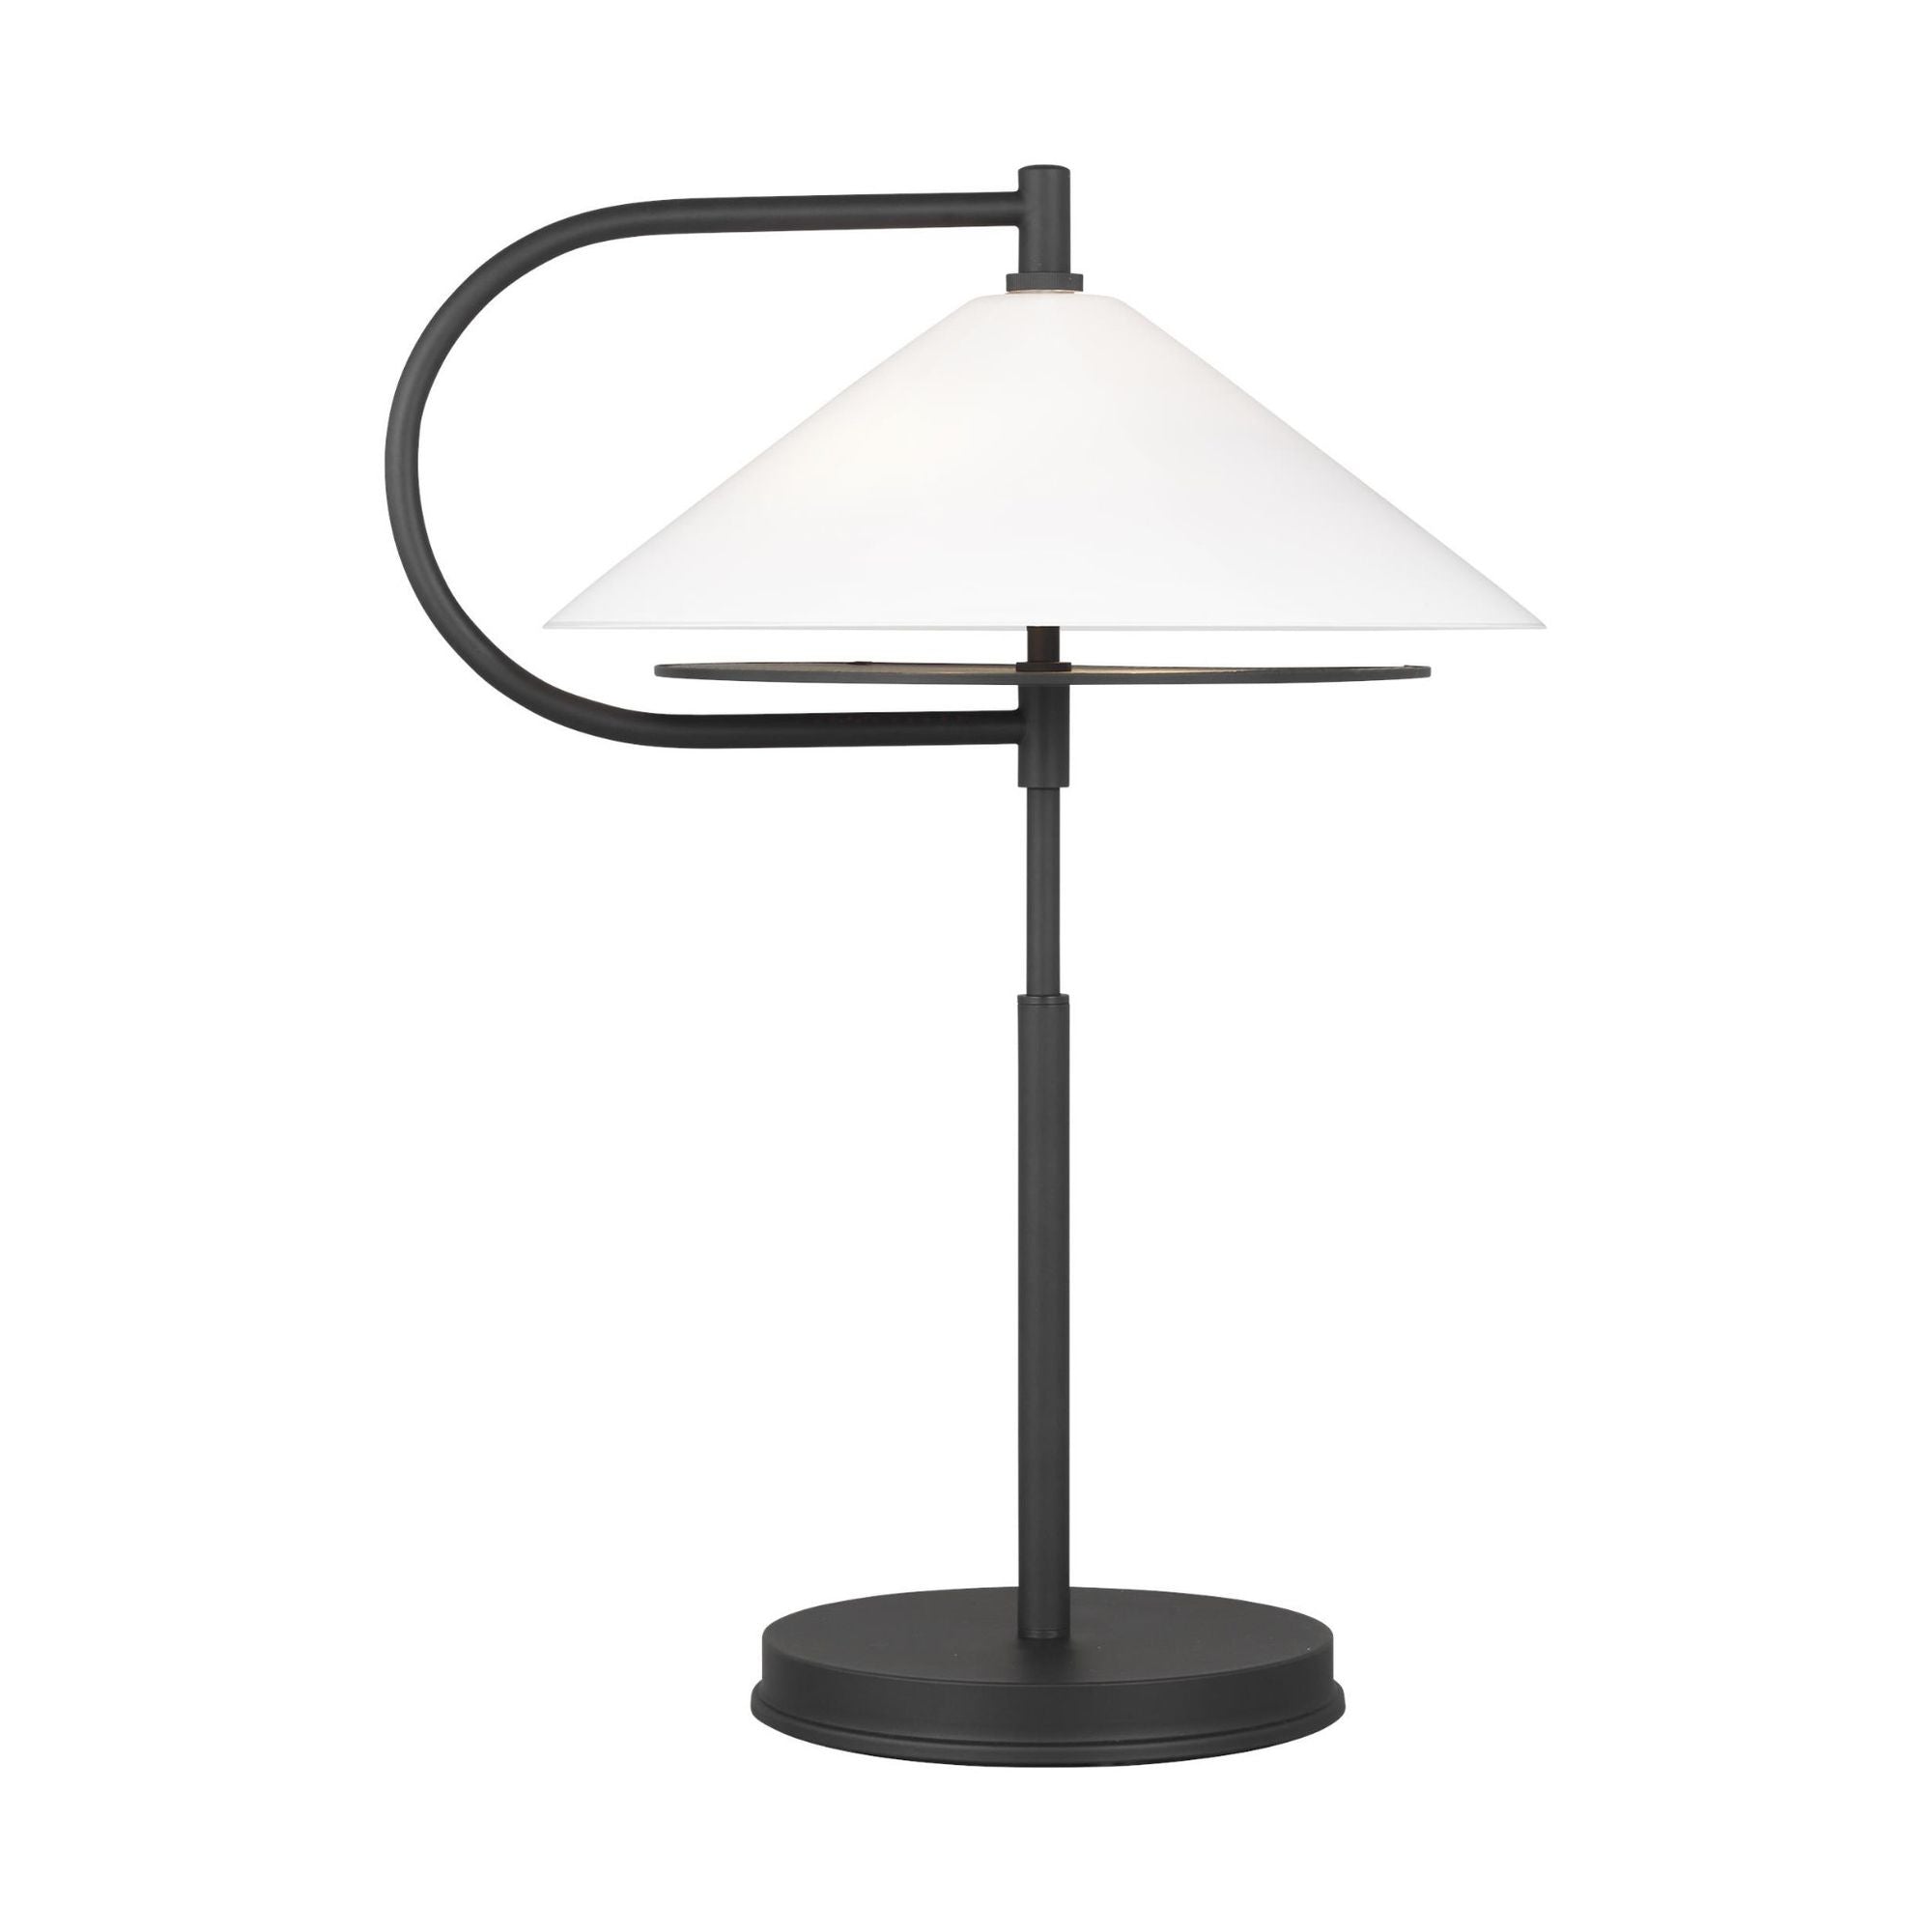 Kelly Wearstler Gesture Table Lamp in Midnight Black